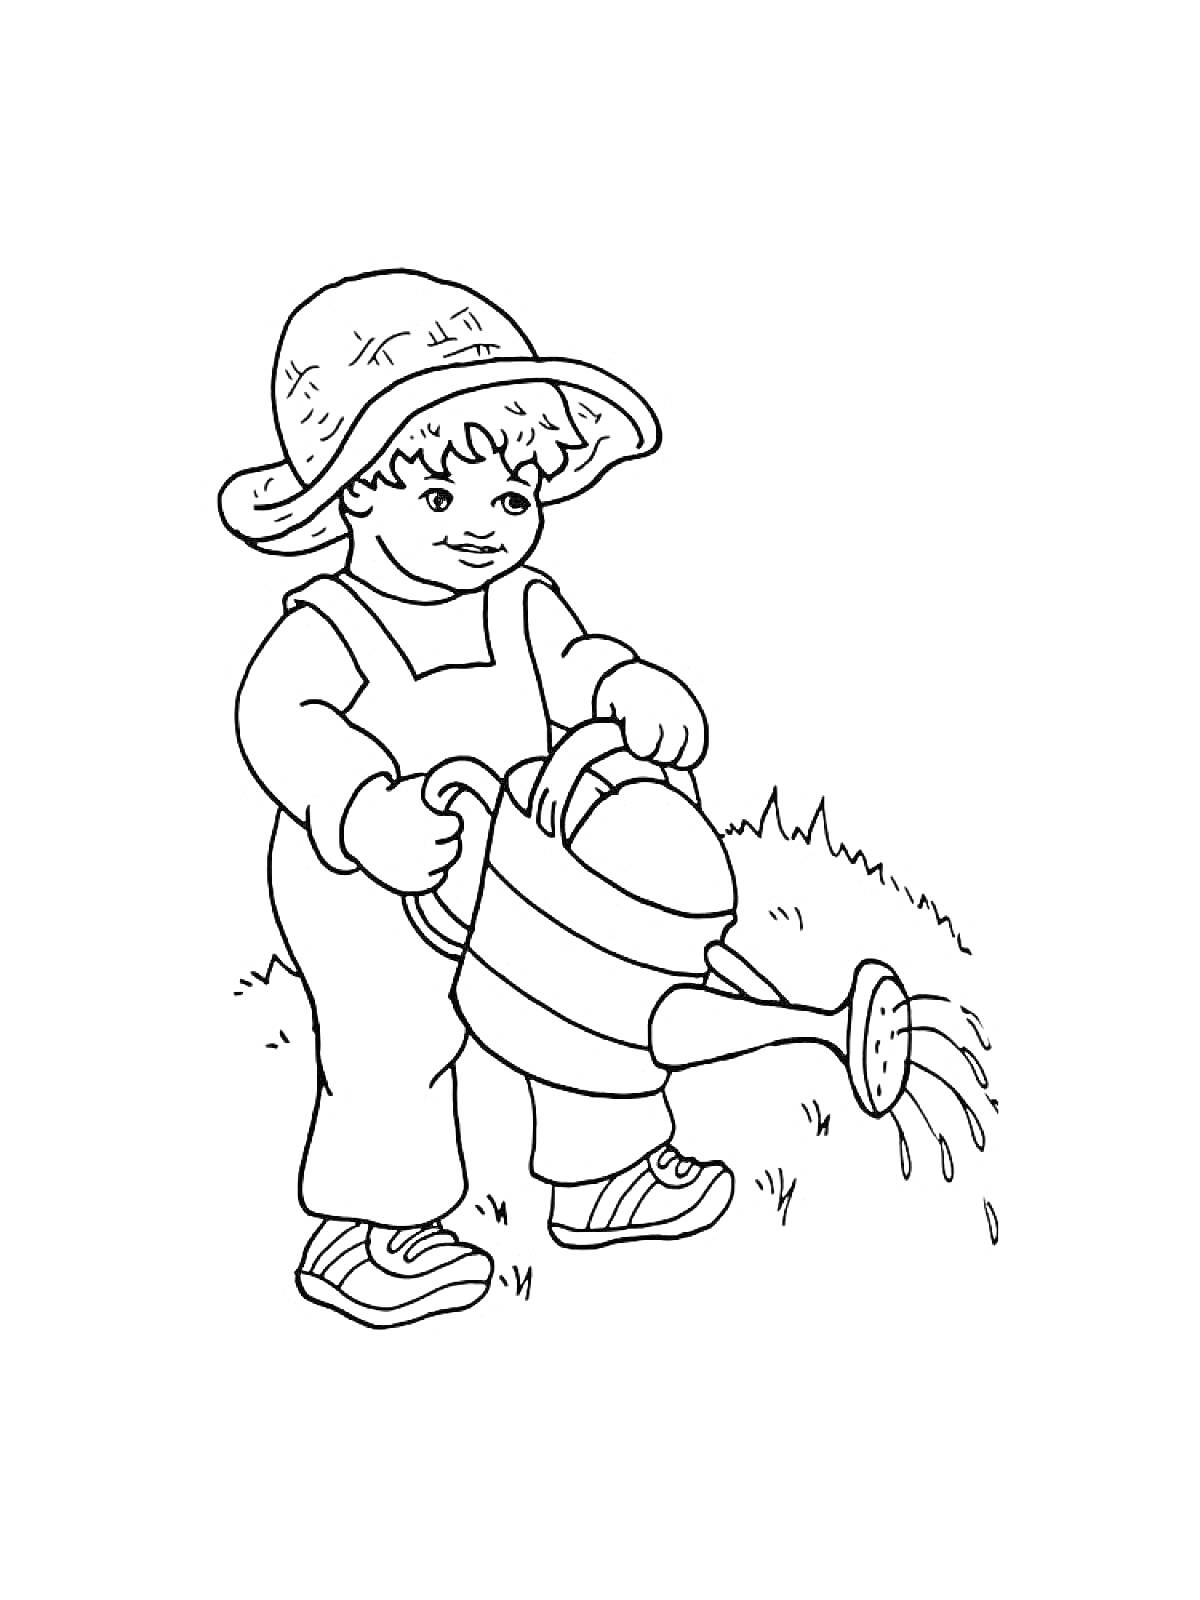 Ребенок в шляпе поливает из лейки на траве